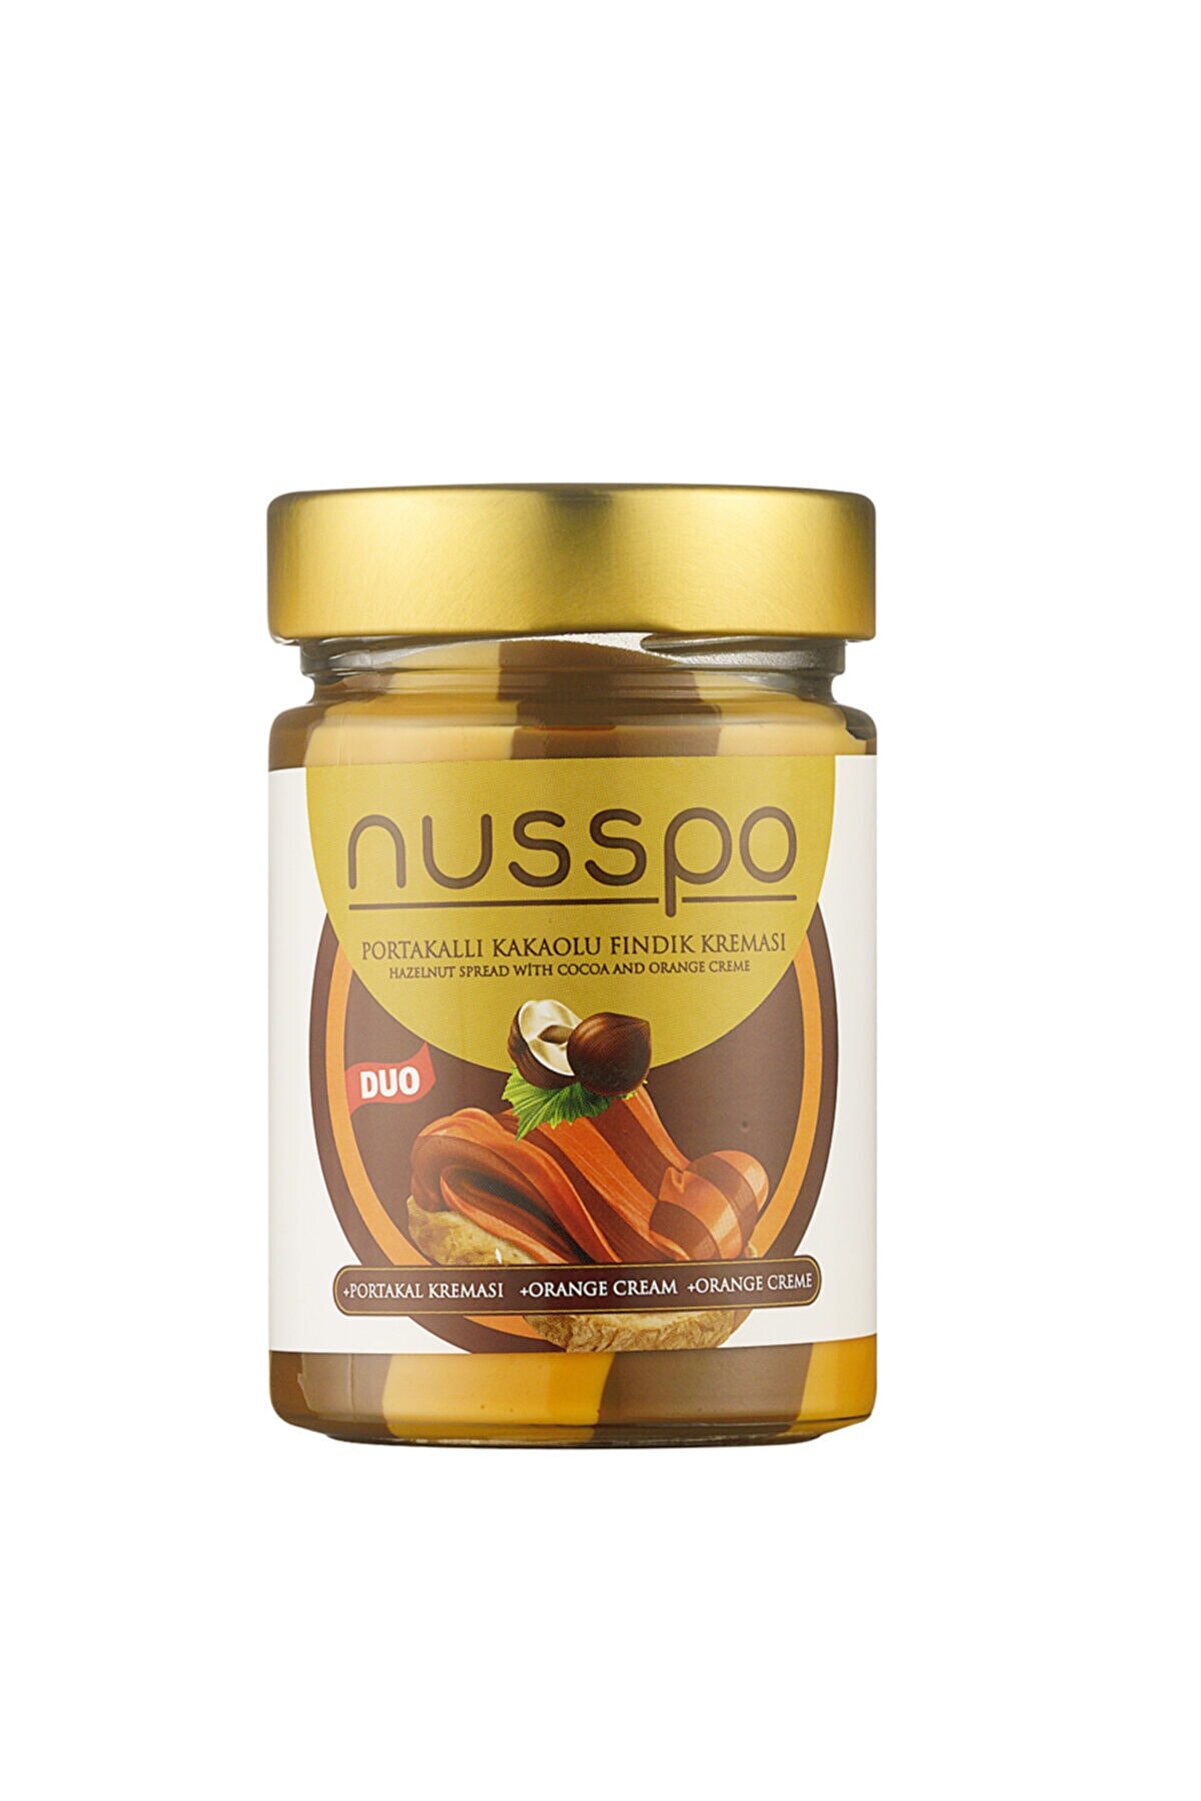 NUSSPO Duo Portakallı Kakaolu Fındık Kreması 350 Gr.